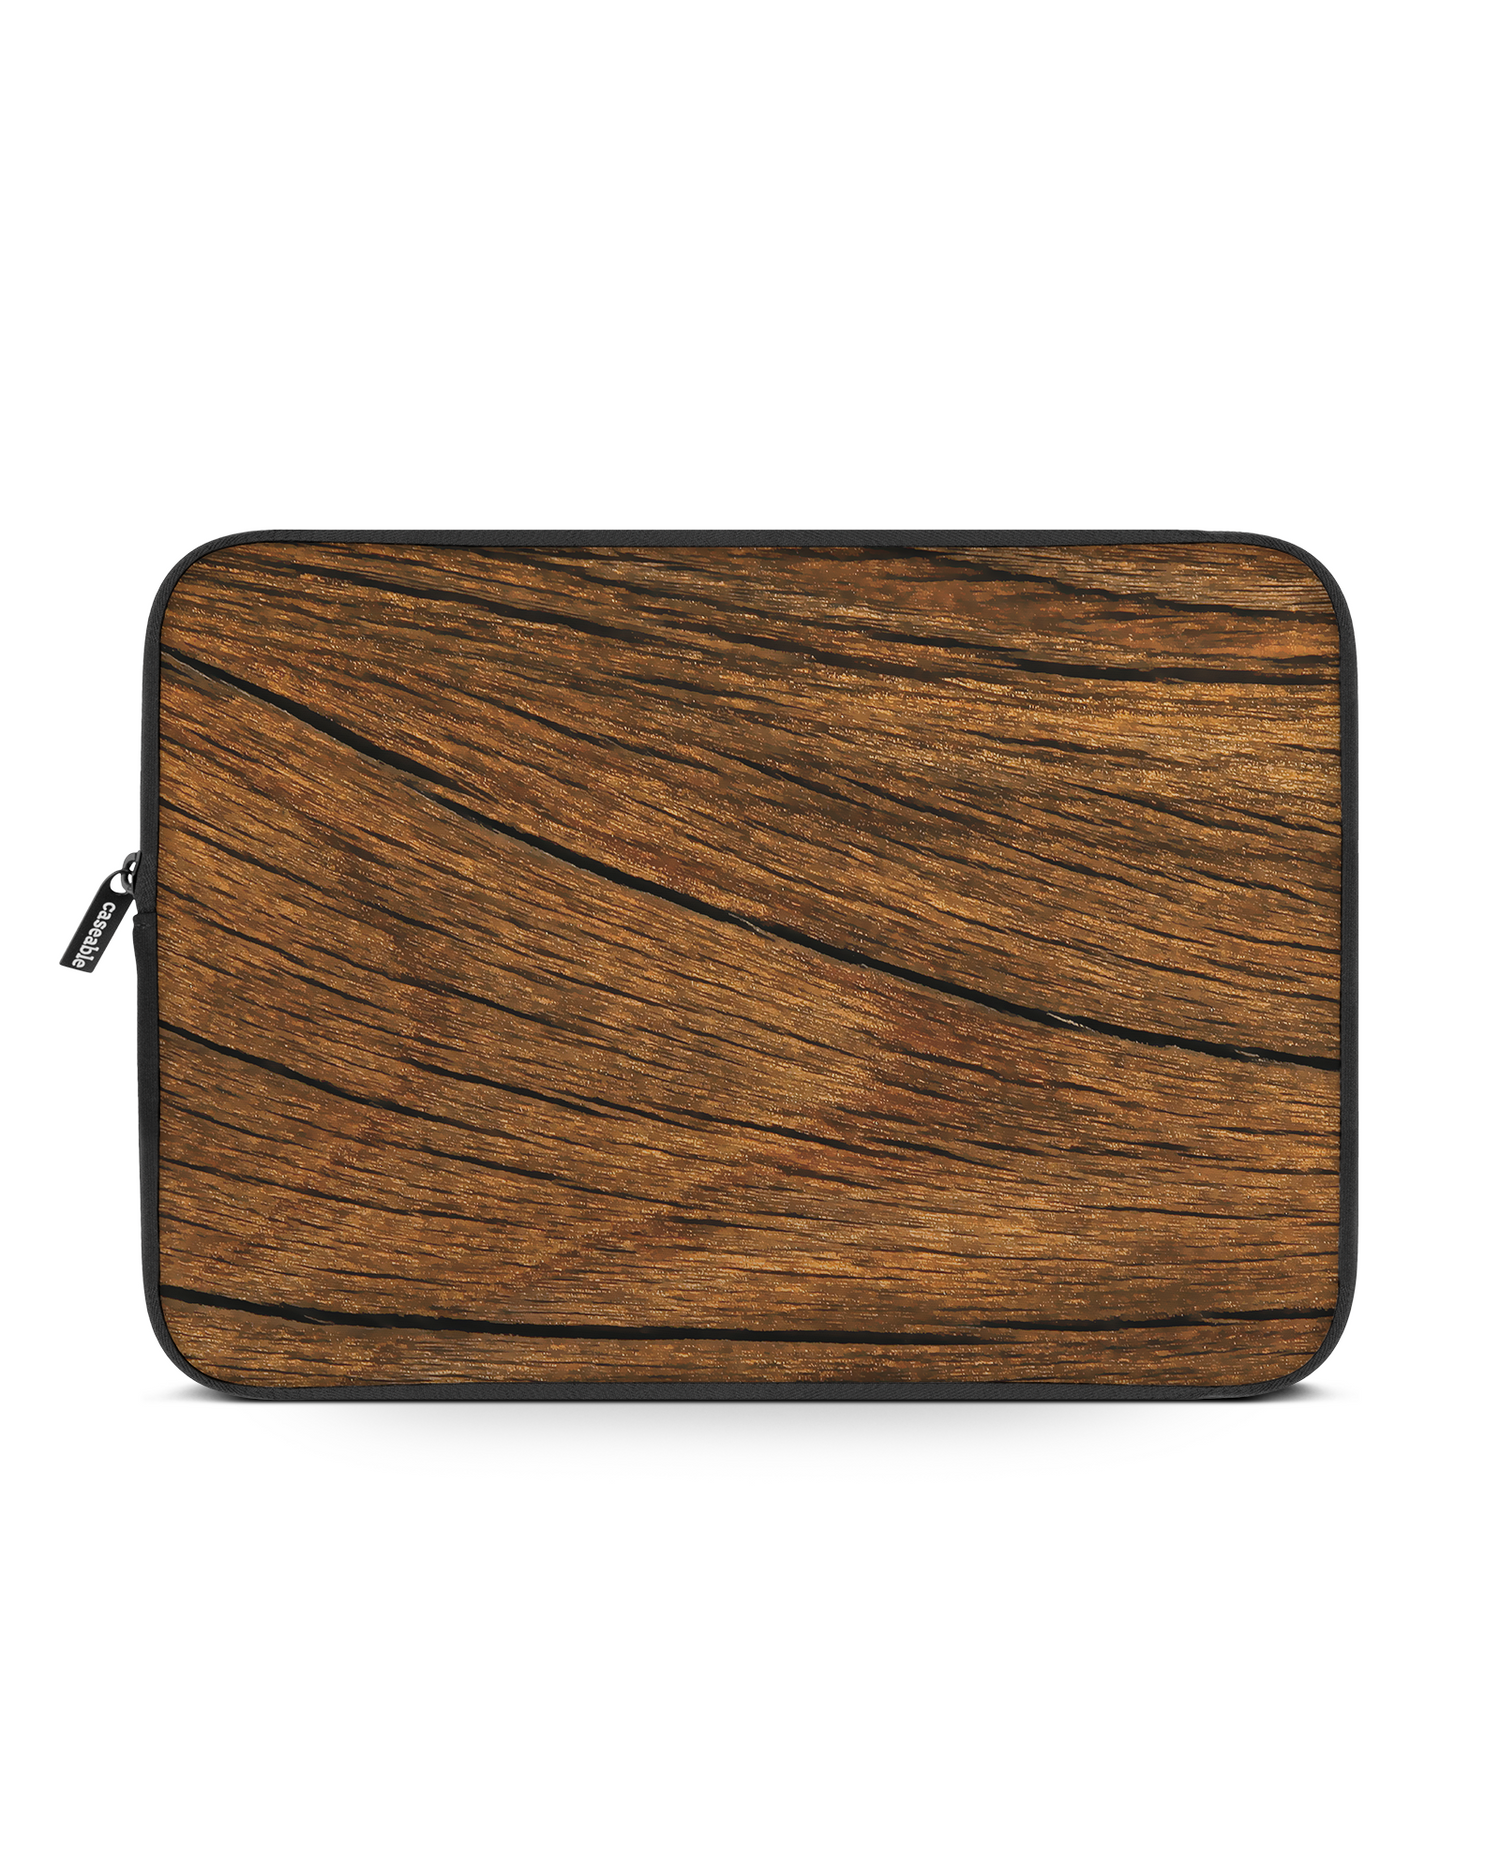 Wood Laptophülle 16 Zoll: Vorderansicht